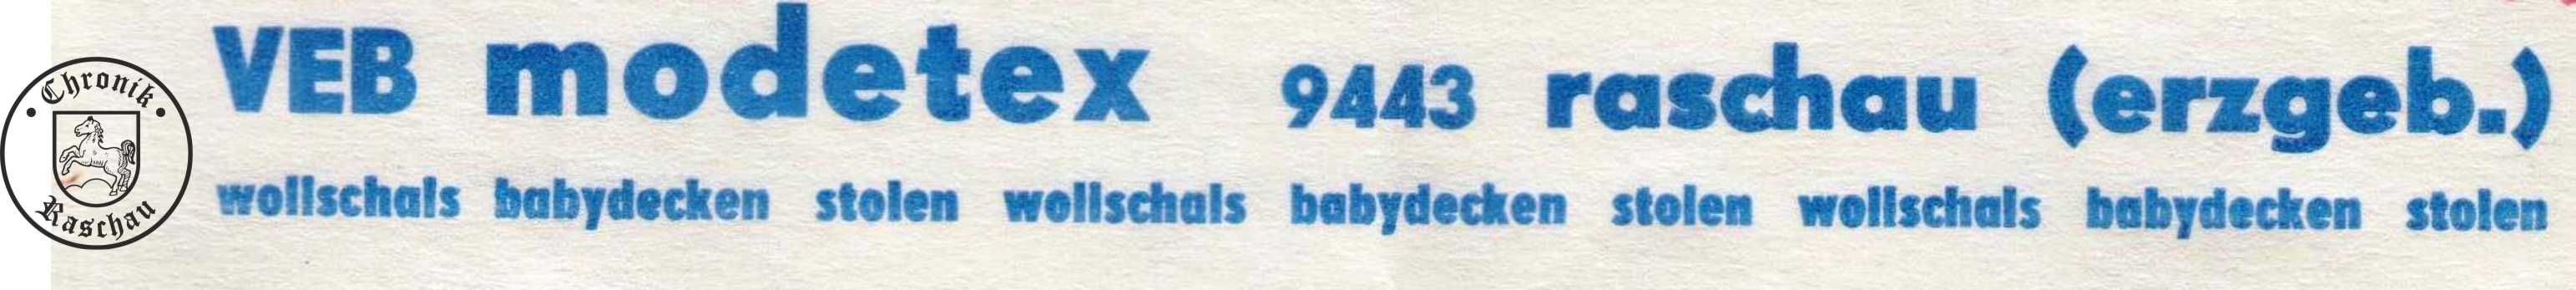 1977 VEB Modetex